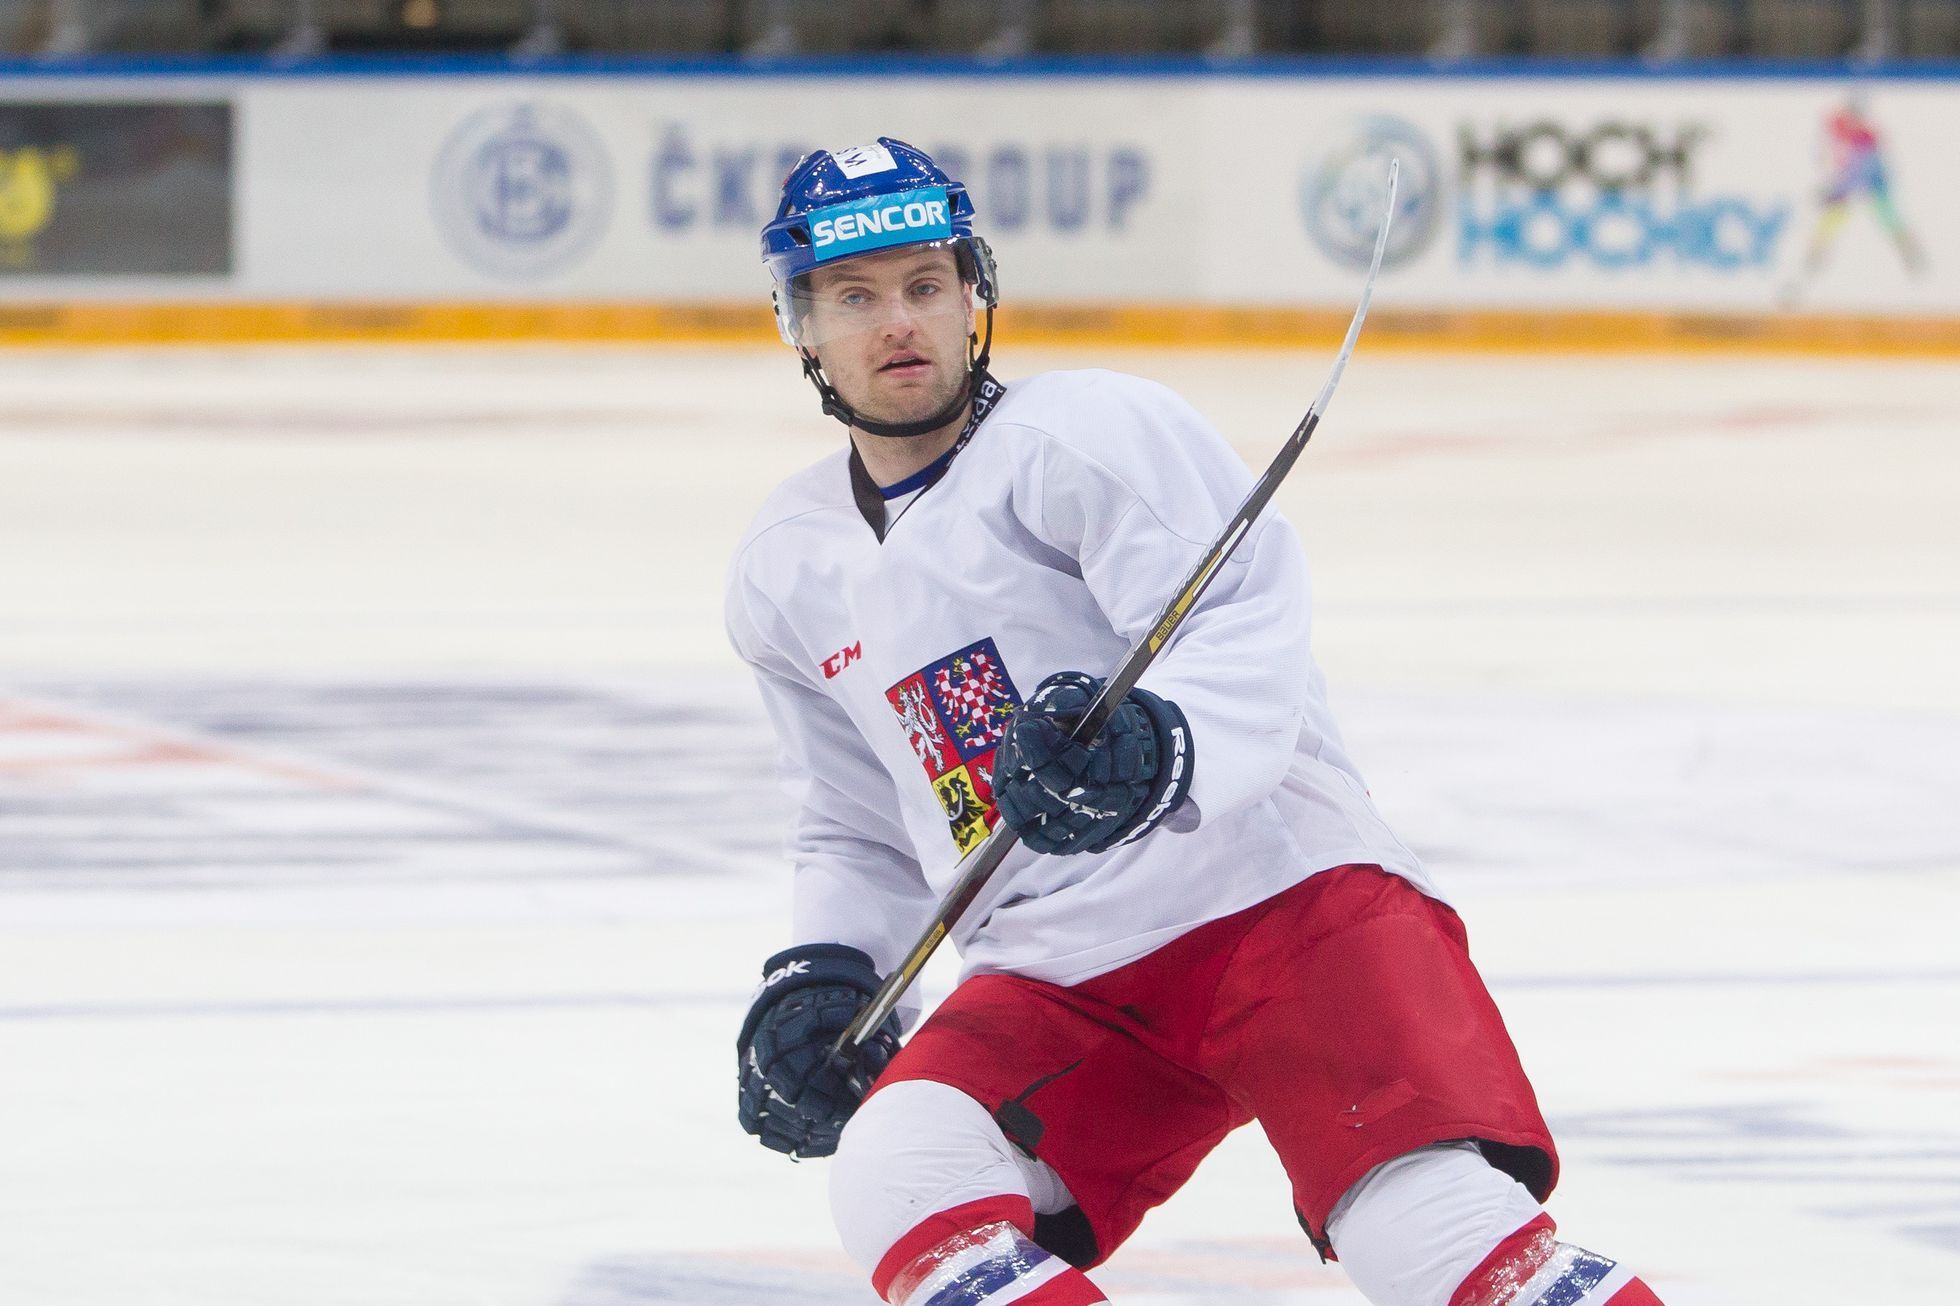 Trénink české reprezentace před MS v hokeji 2016